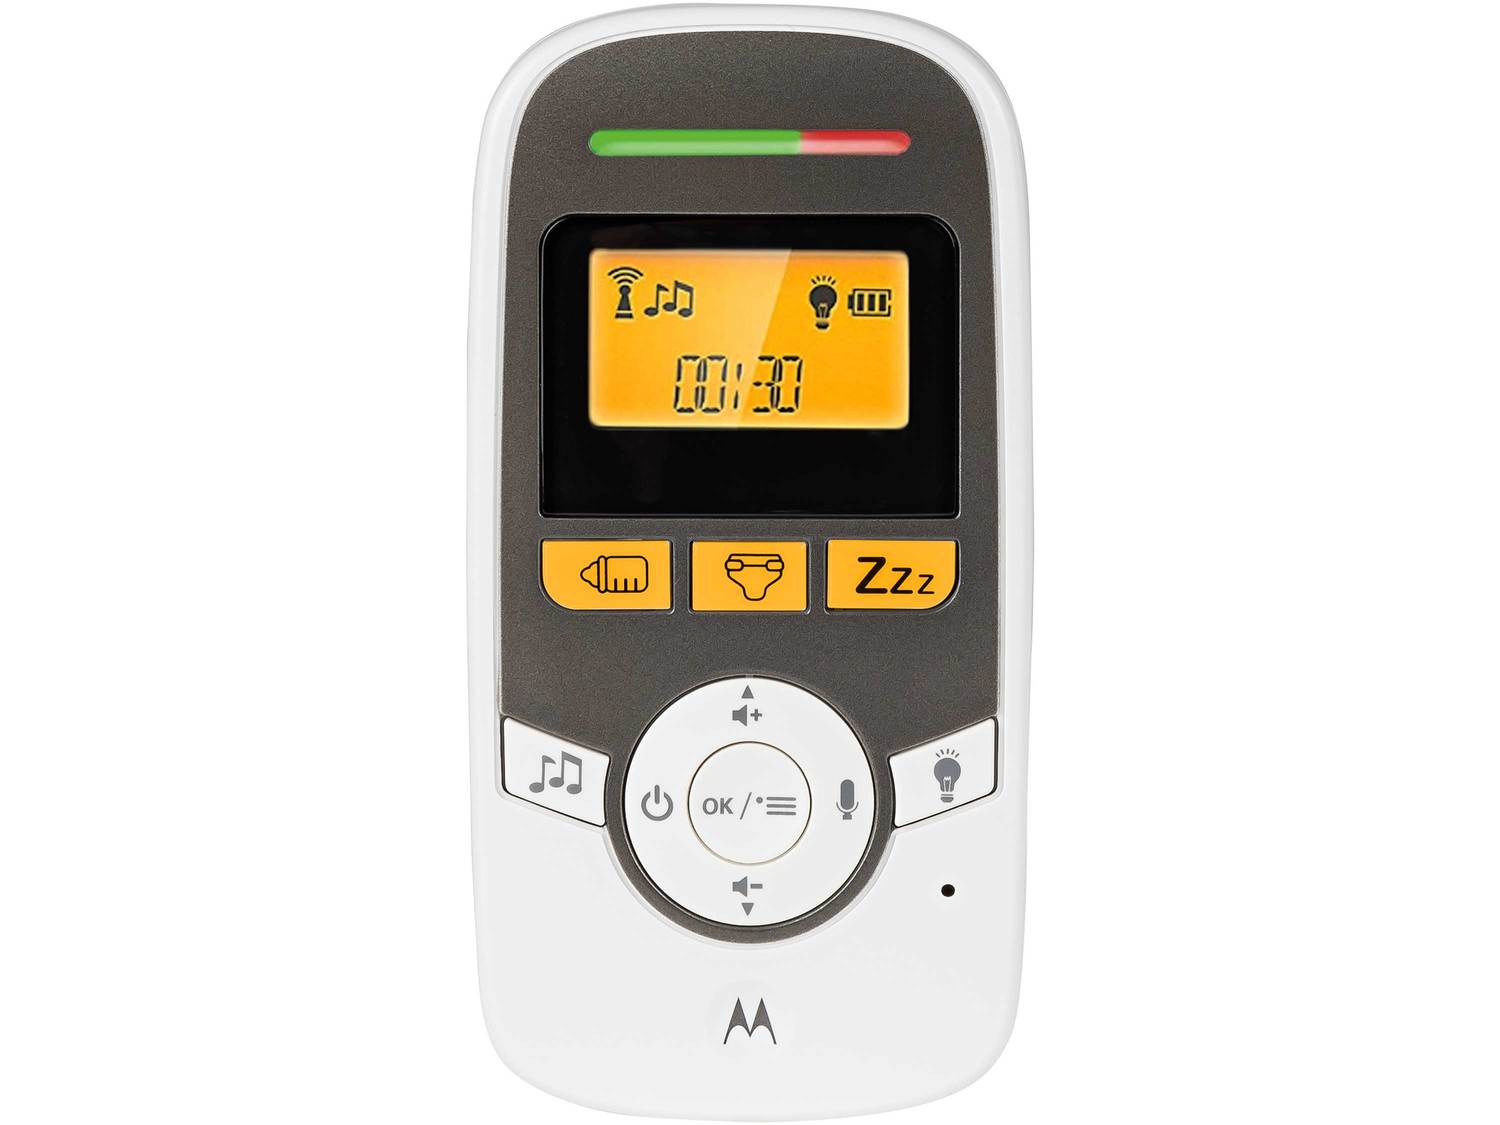 Niania elektroniczna MBP161 Motorola, cena 169,00 PLN 
- tryb eco
- funkcja kołysanki
- ...